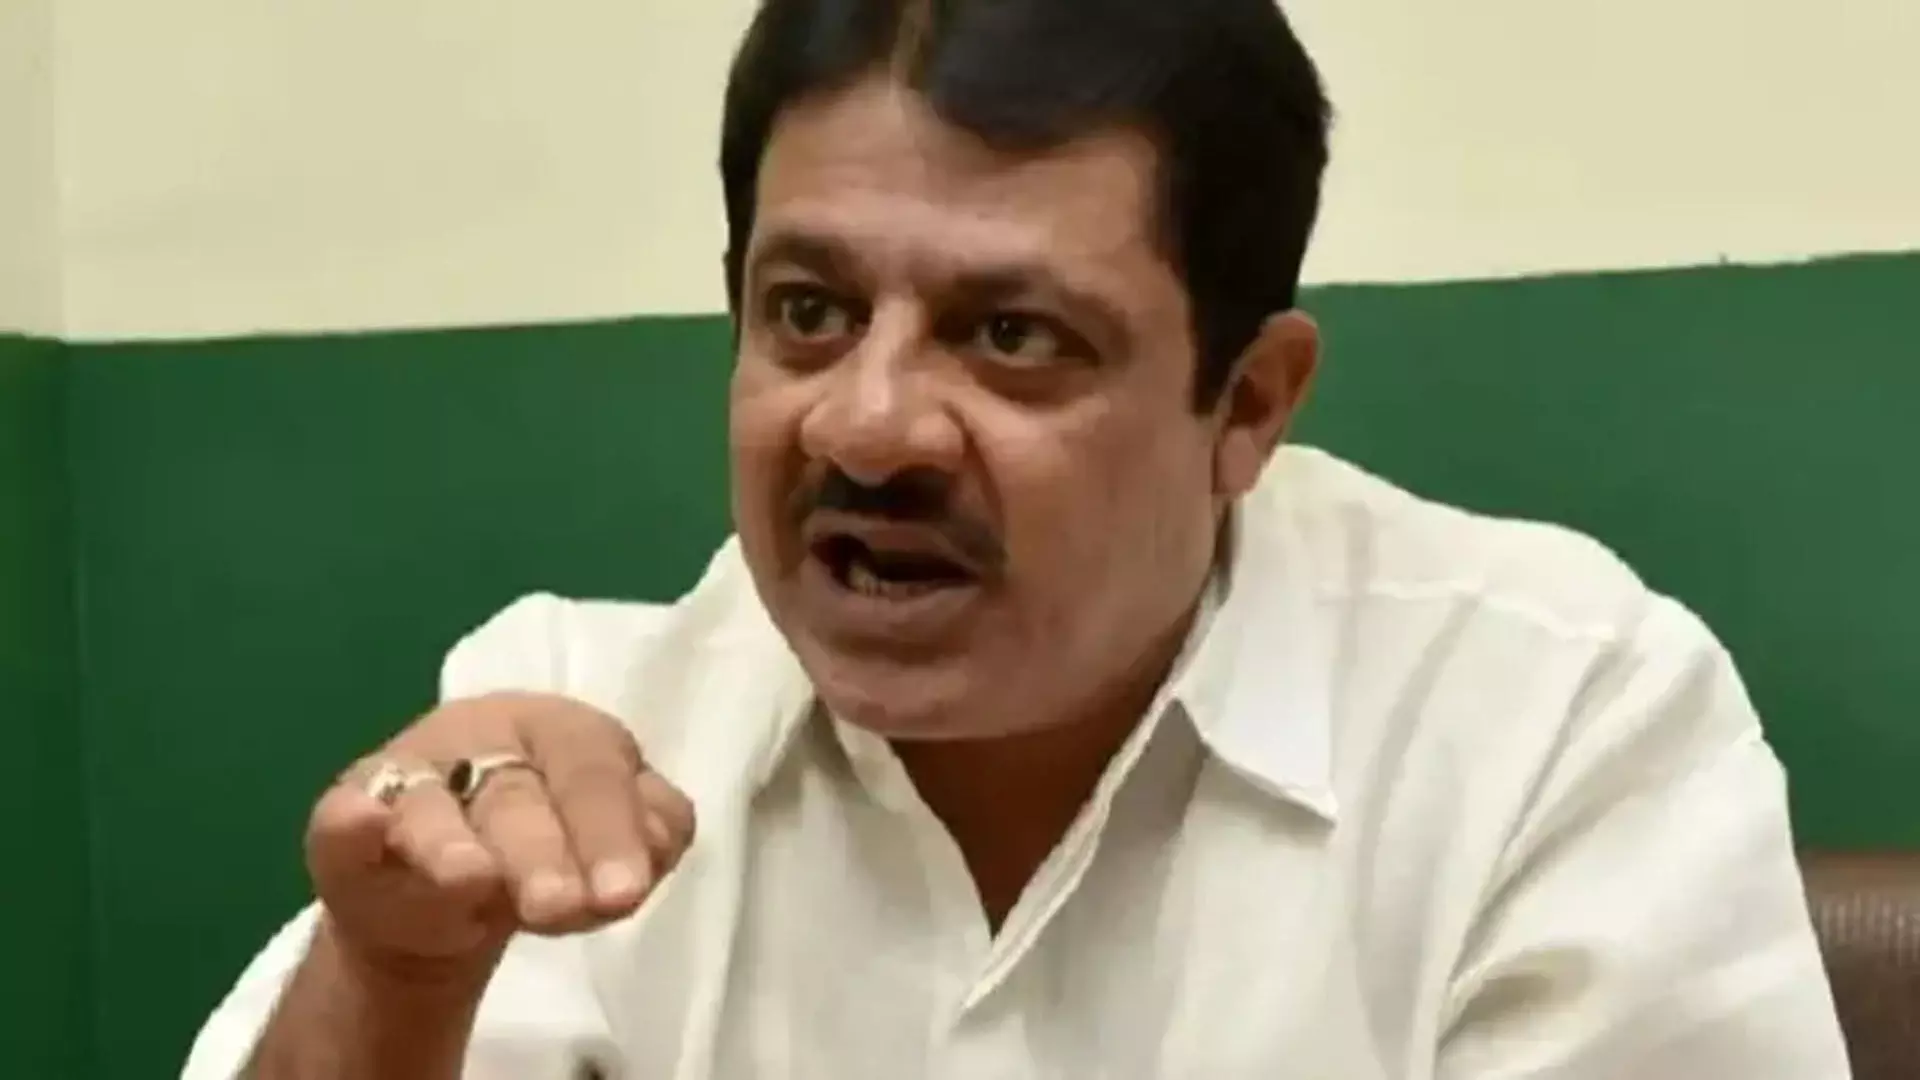 Karnataka: वन मंत्री को मुसलमानों के लिए सिर झुकाकर काम करना होगा- मंत्री ज़मीर अहमद